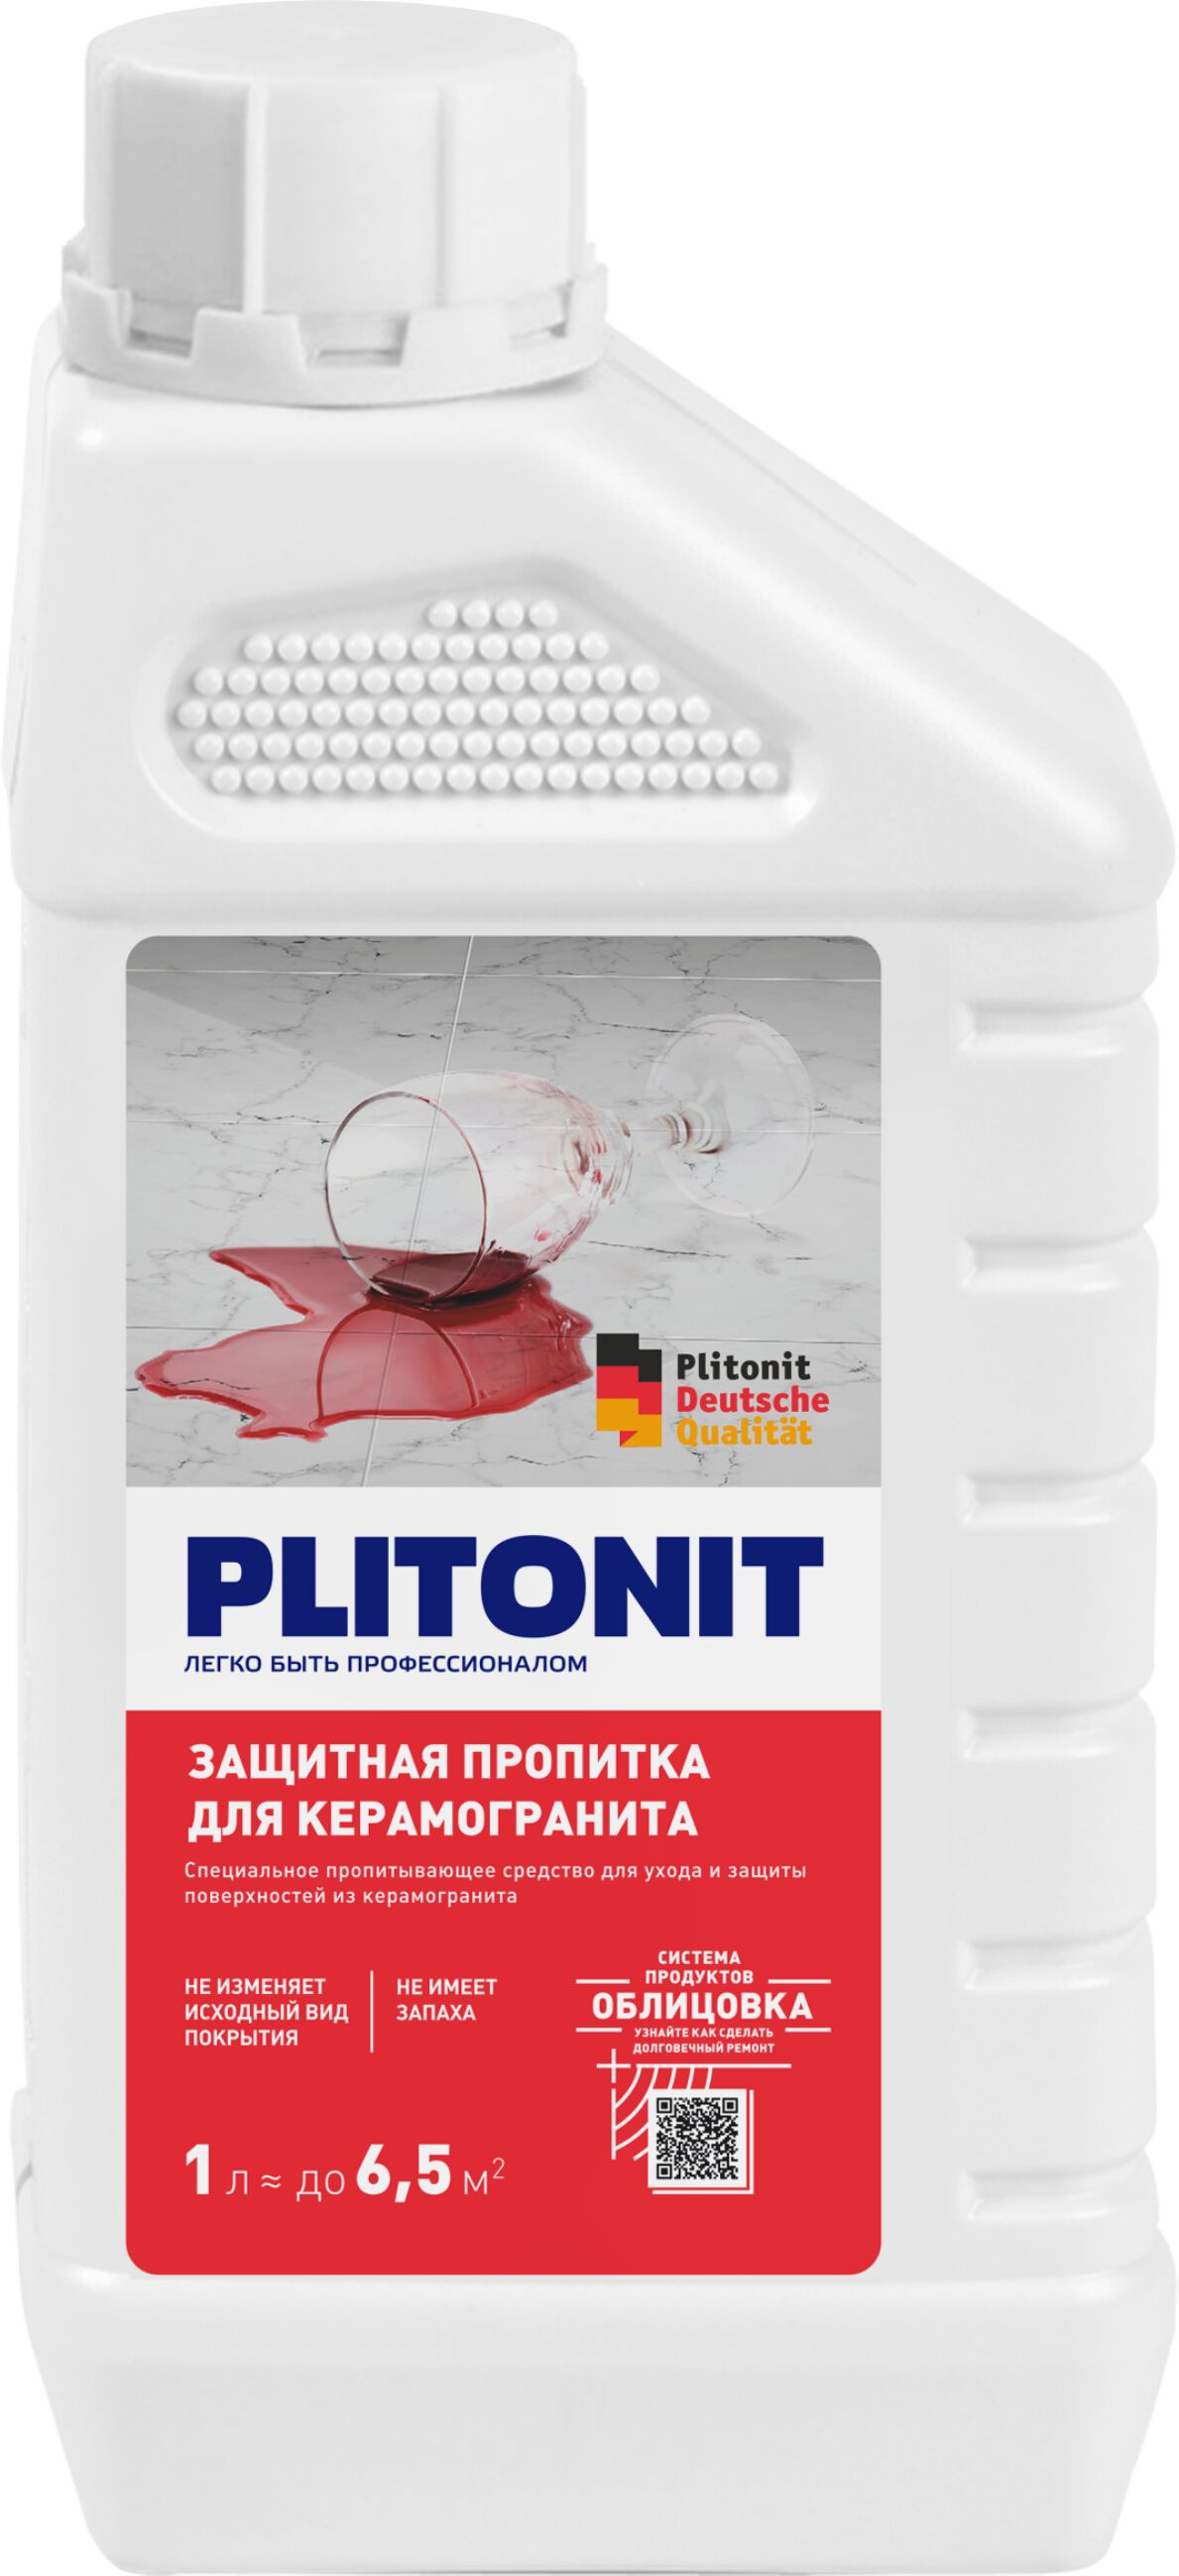 PLITONIT защитная пропитка для керамогранита - 1 л.